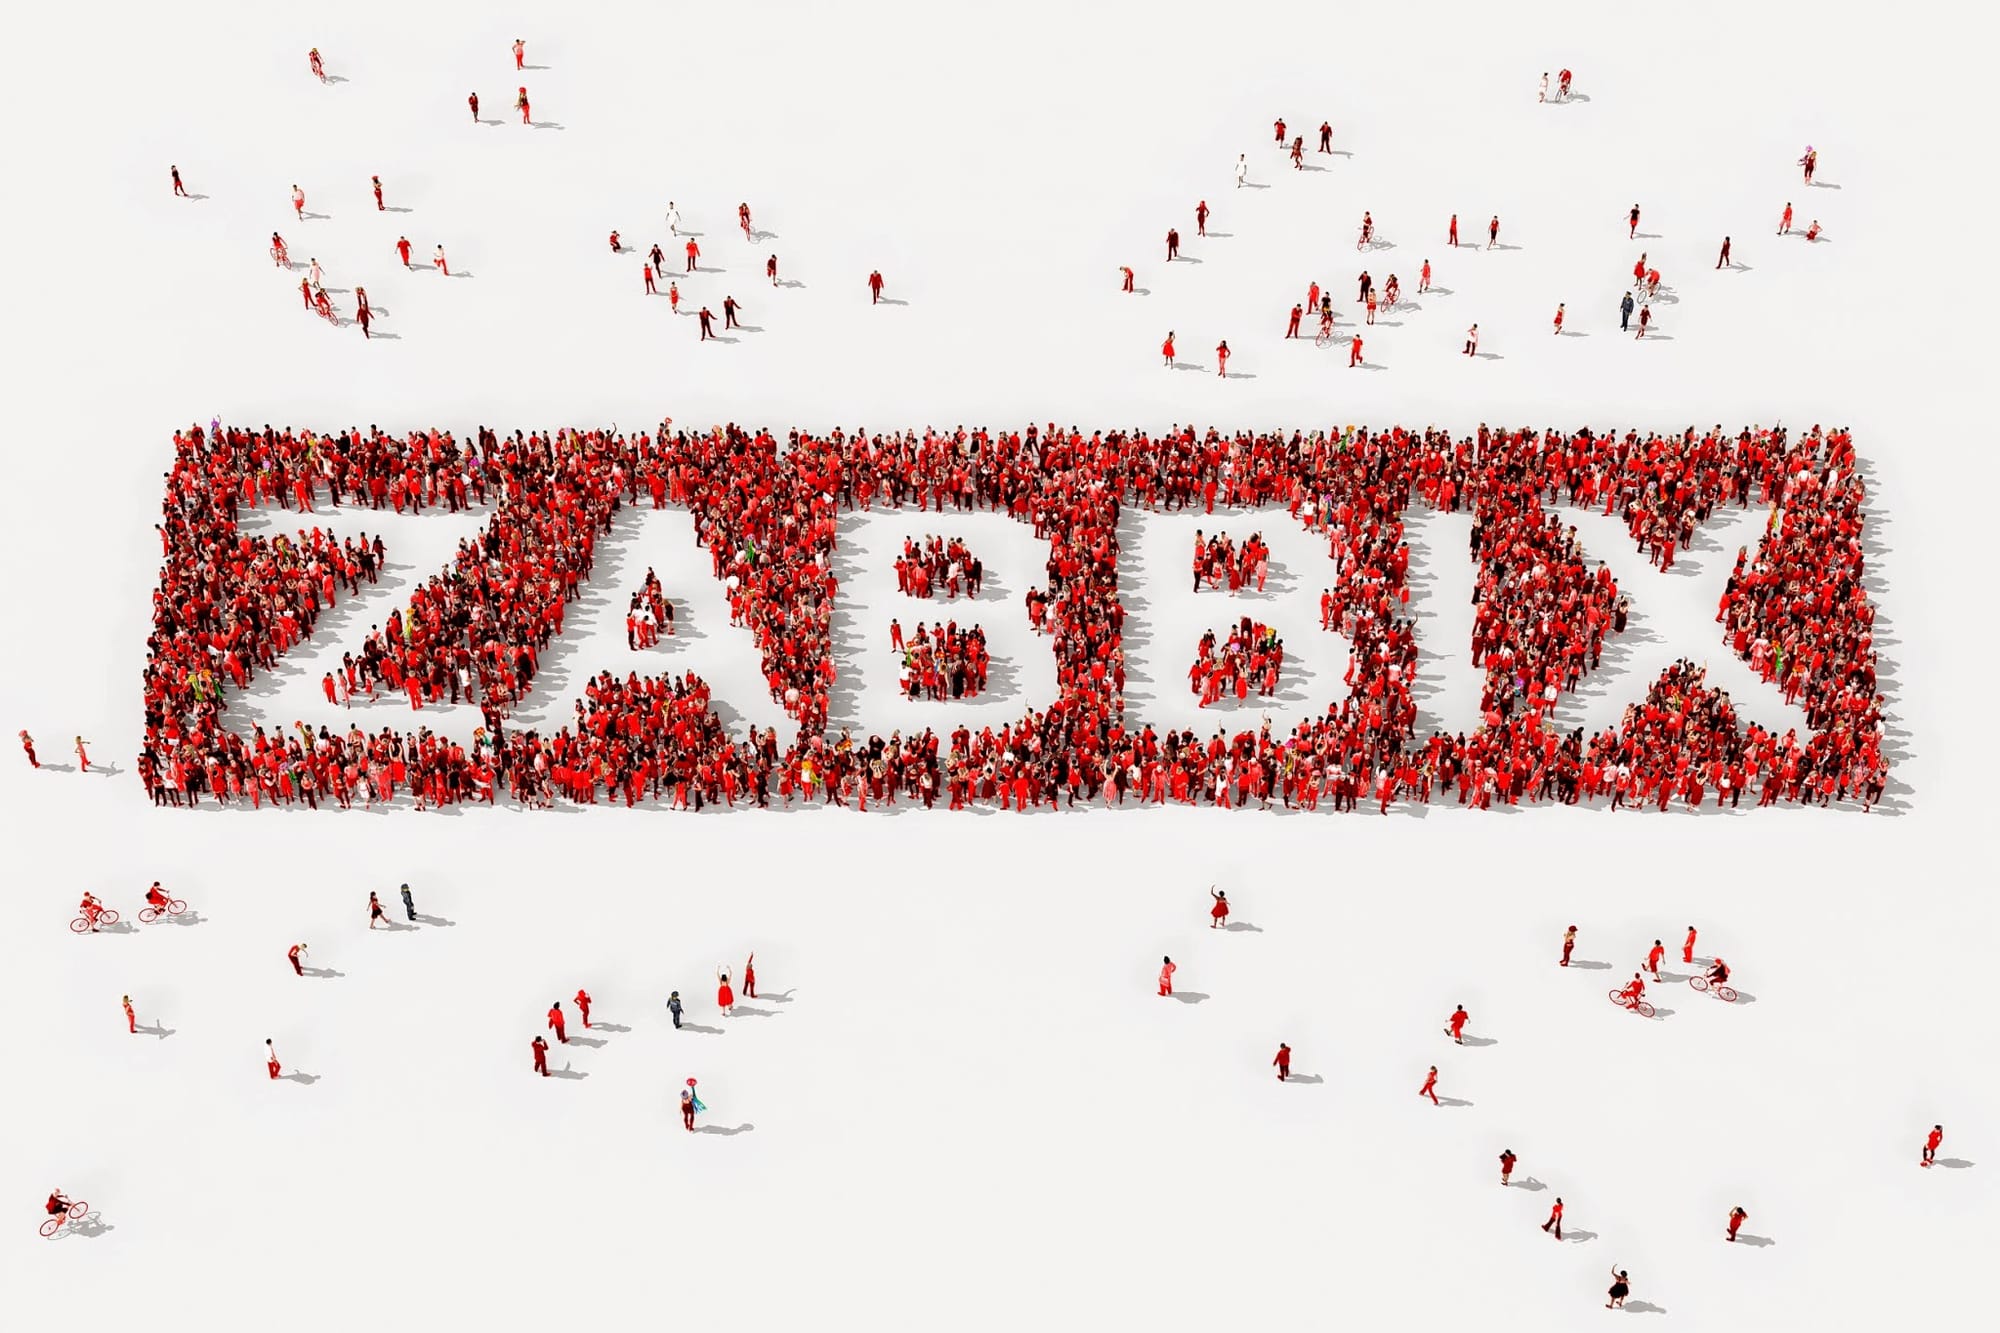 Installing Zabbix 3.2 on Debian Jessie